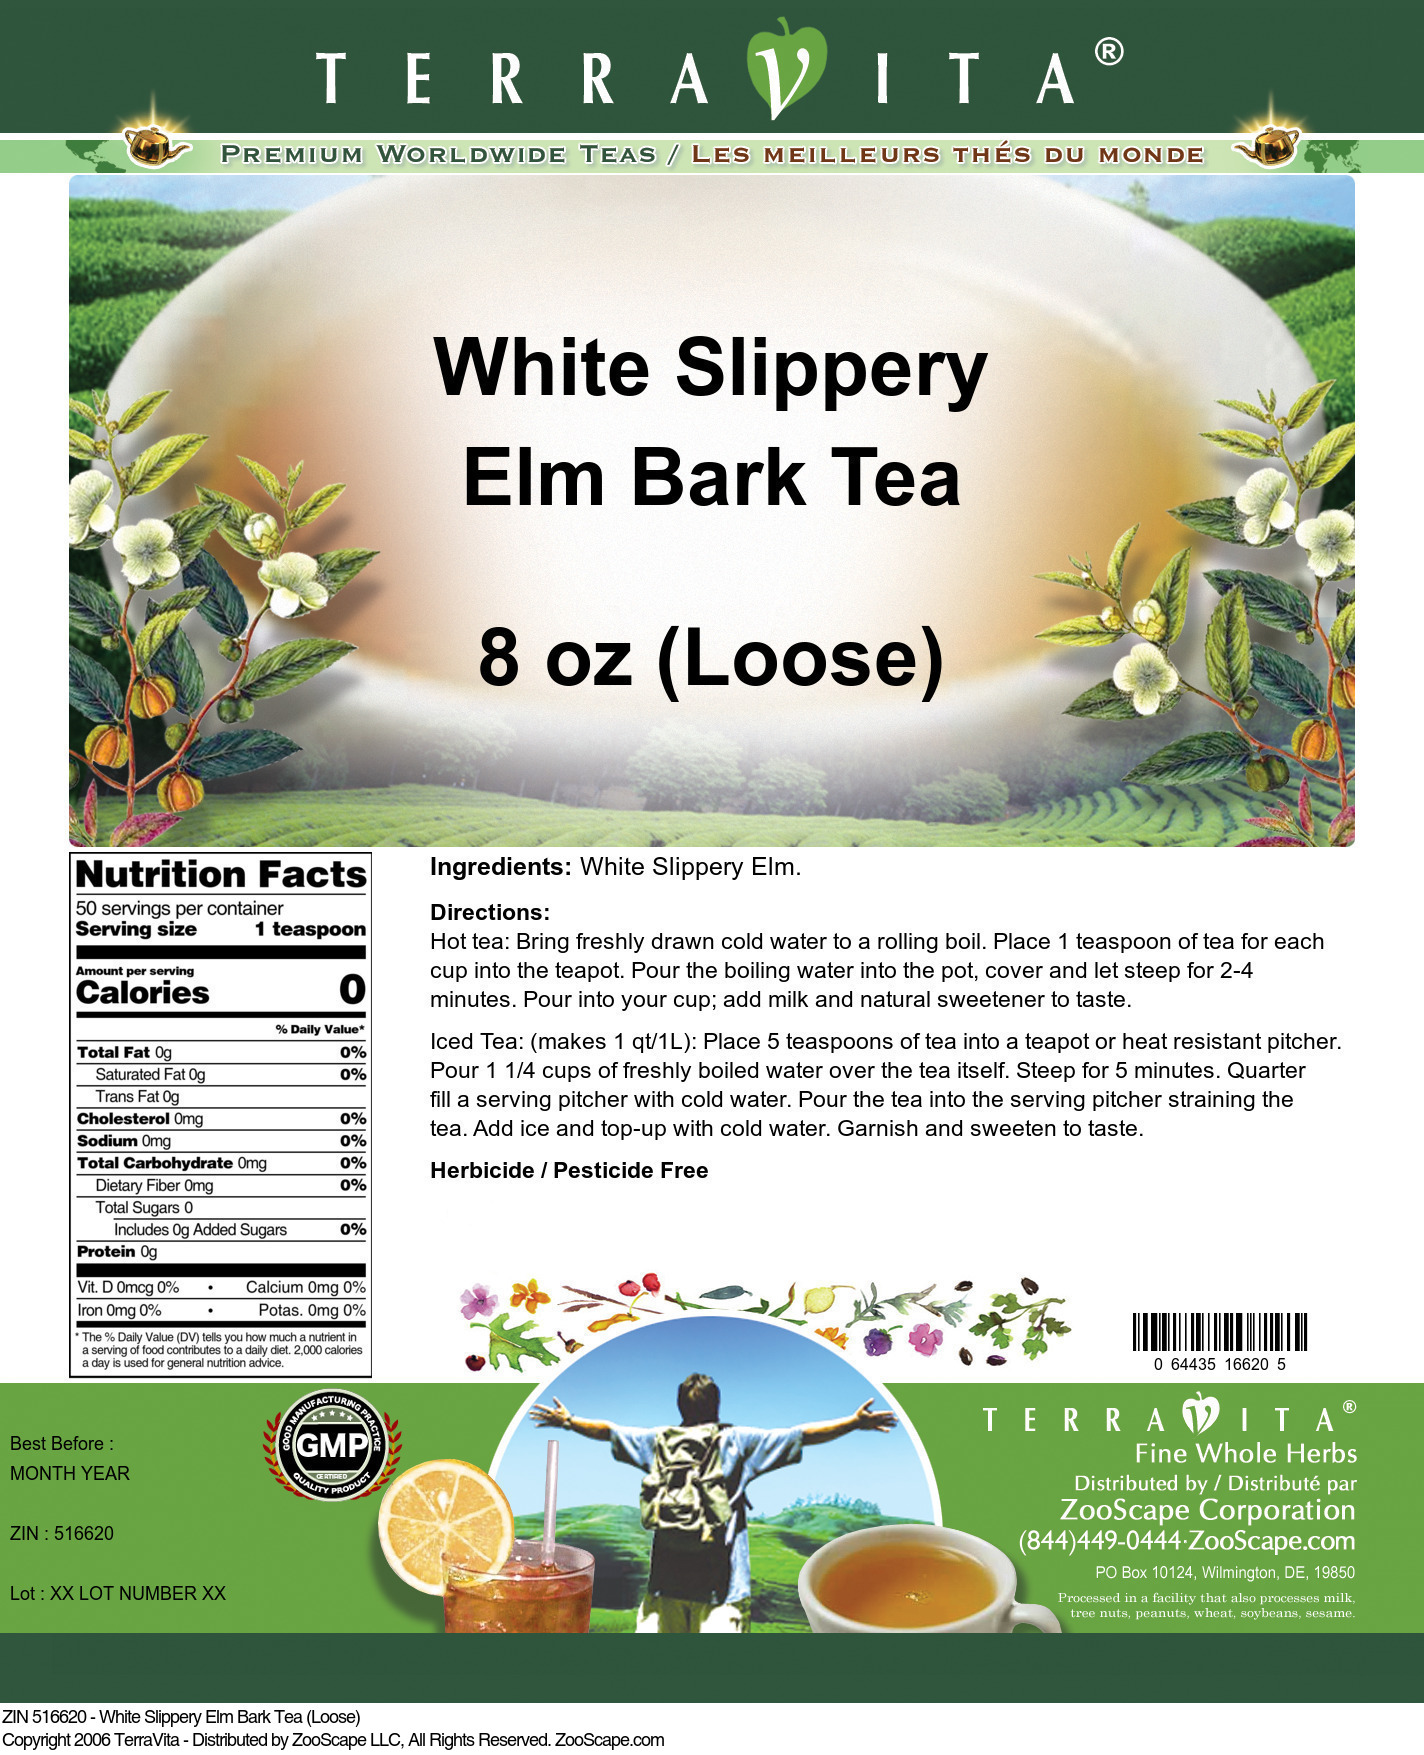 White Slippery Elm Bark Tea (Loose) - Label